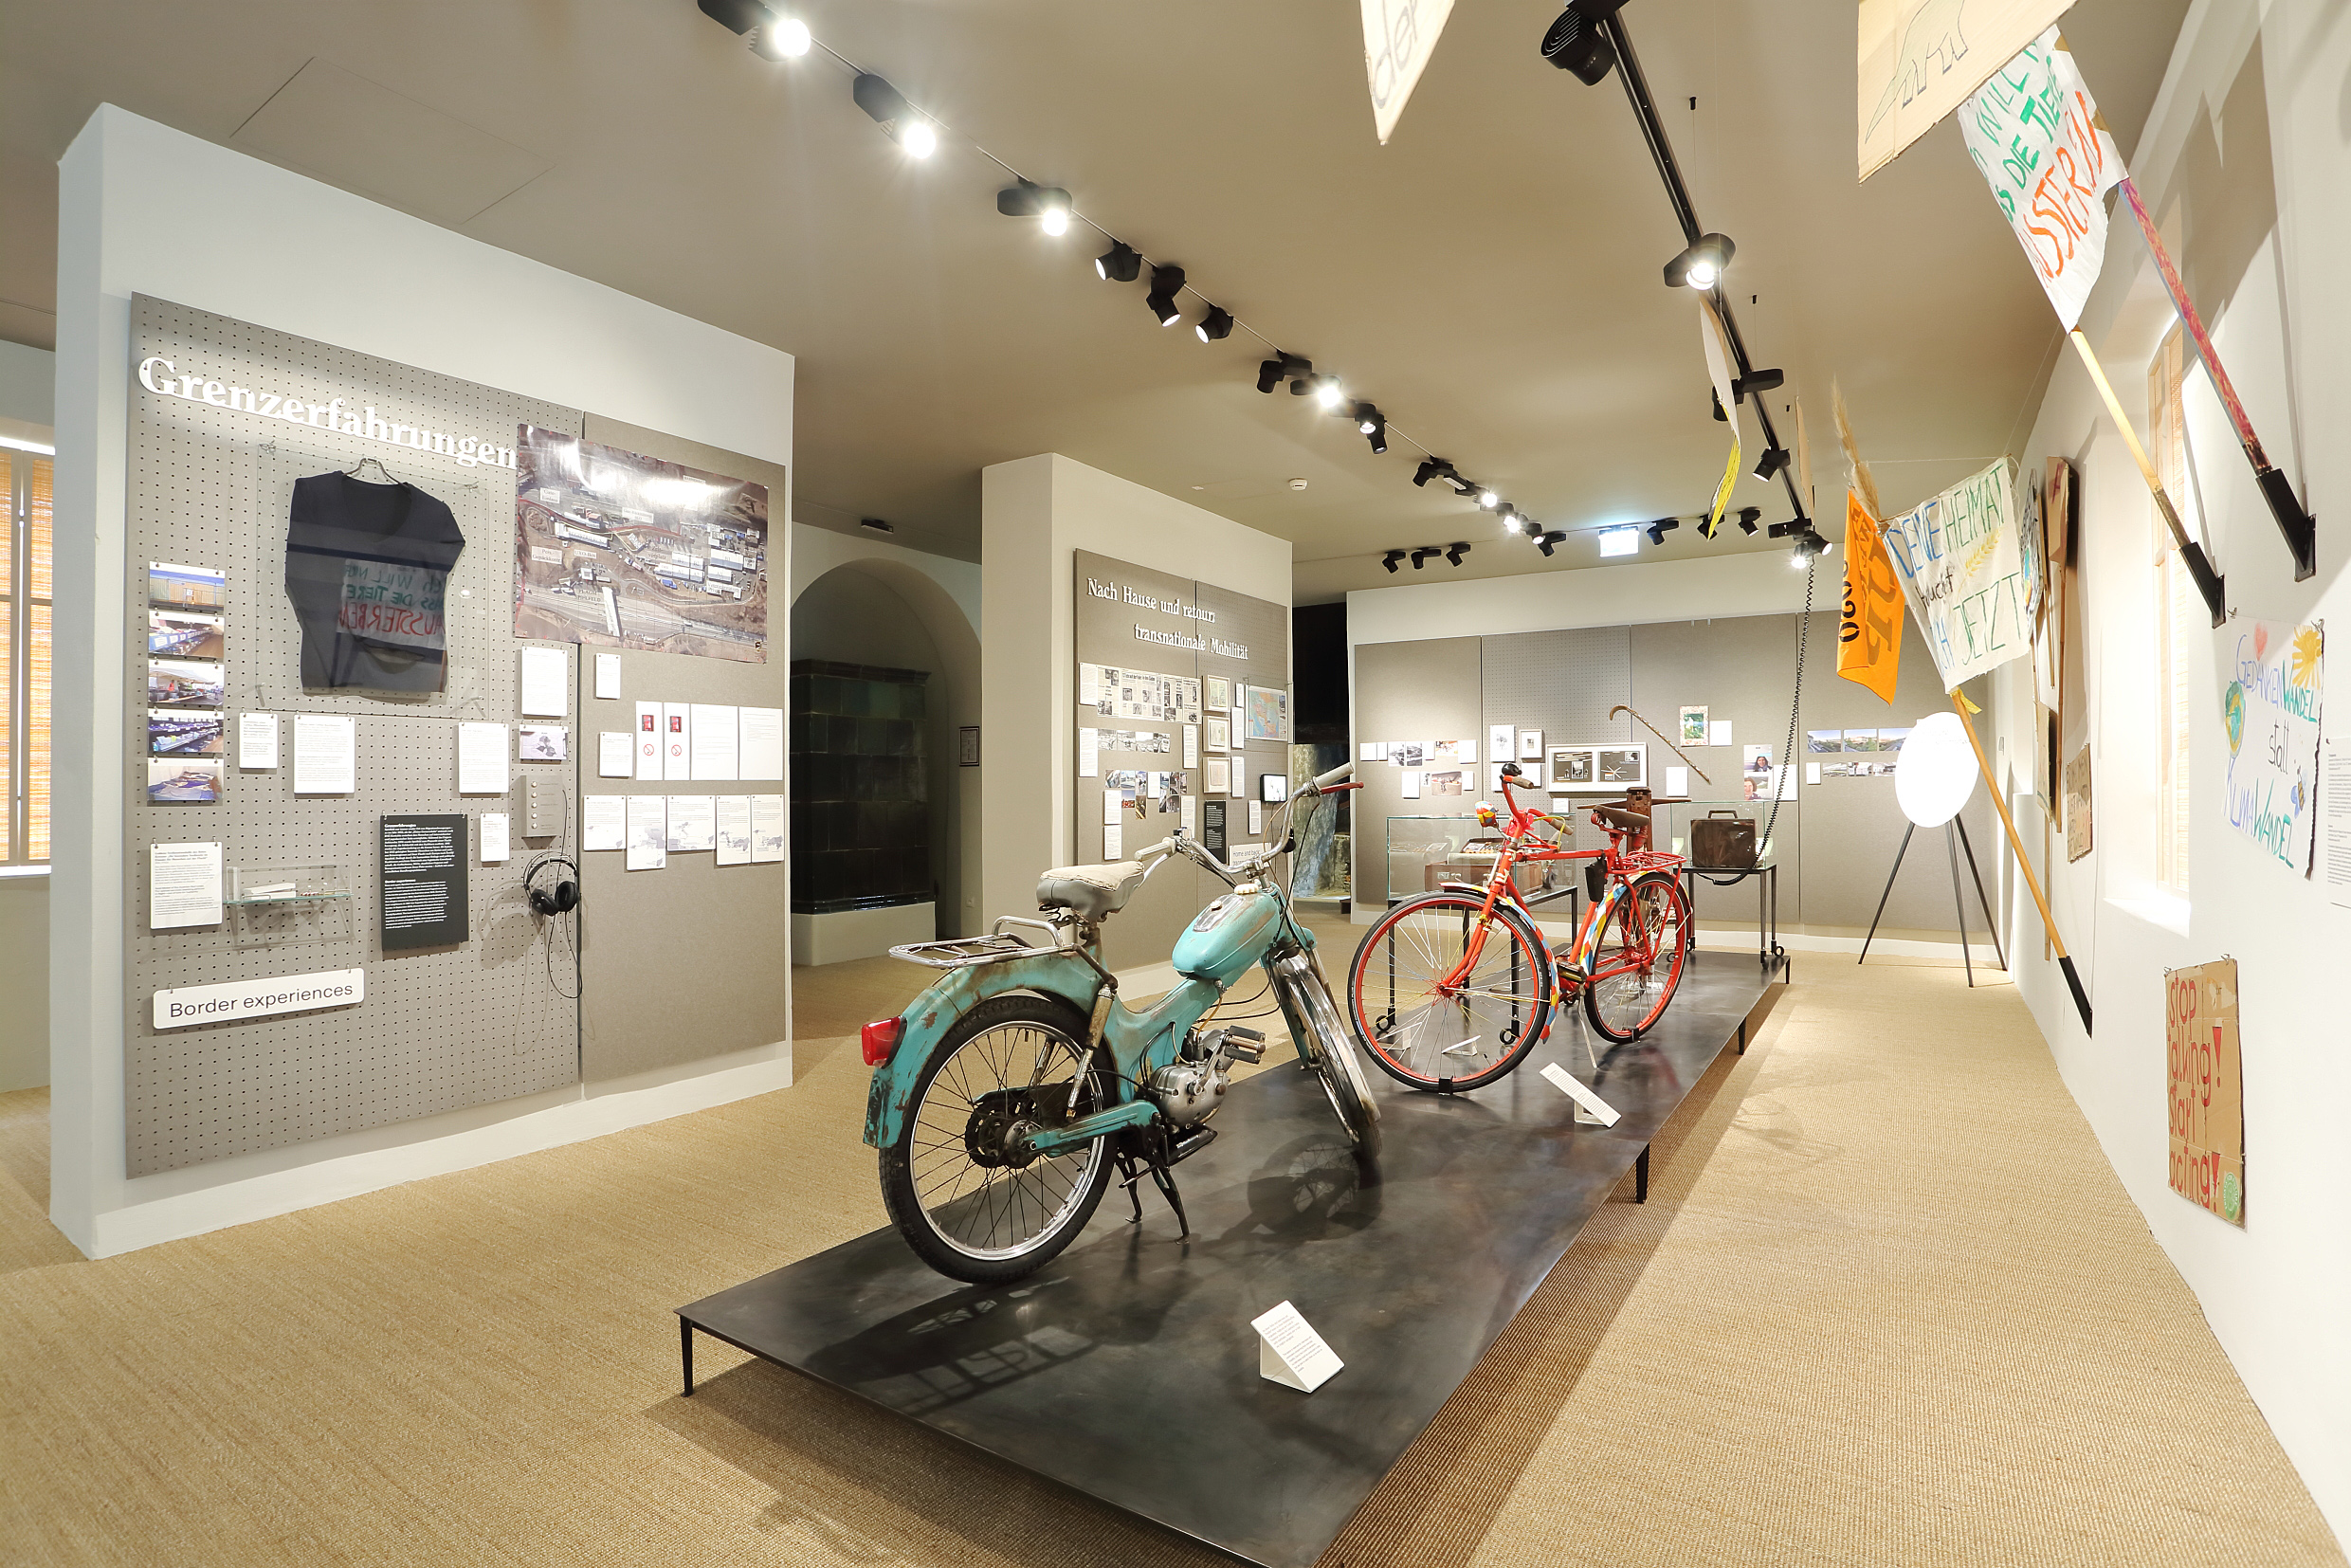 Foto von einem Moped und einem Fahrrad sowie diversen anderen Ausstellungsstücken im Grazer Volkskundemuseum.